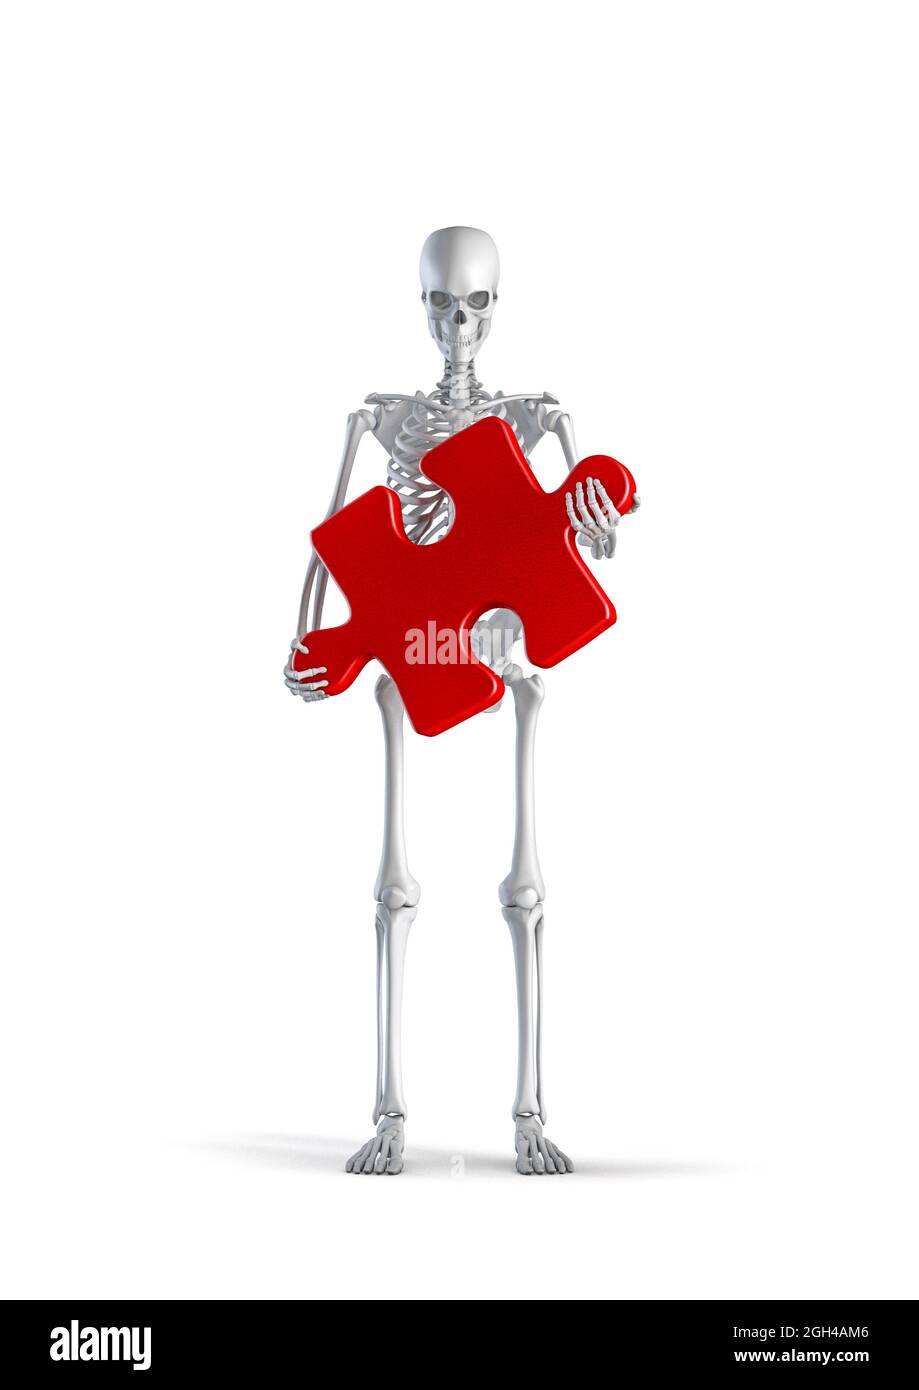 Esqueleto del rompecabezas - 3D ilustración de la figura masculina del esqueleto humano que sostiene la pieza grande del rompecabezas aislada en el fondo blanco del estudio Fotografía de stock - Alamy